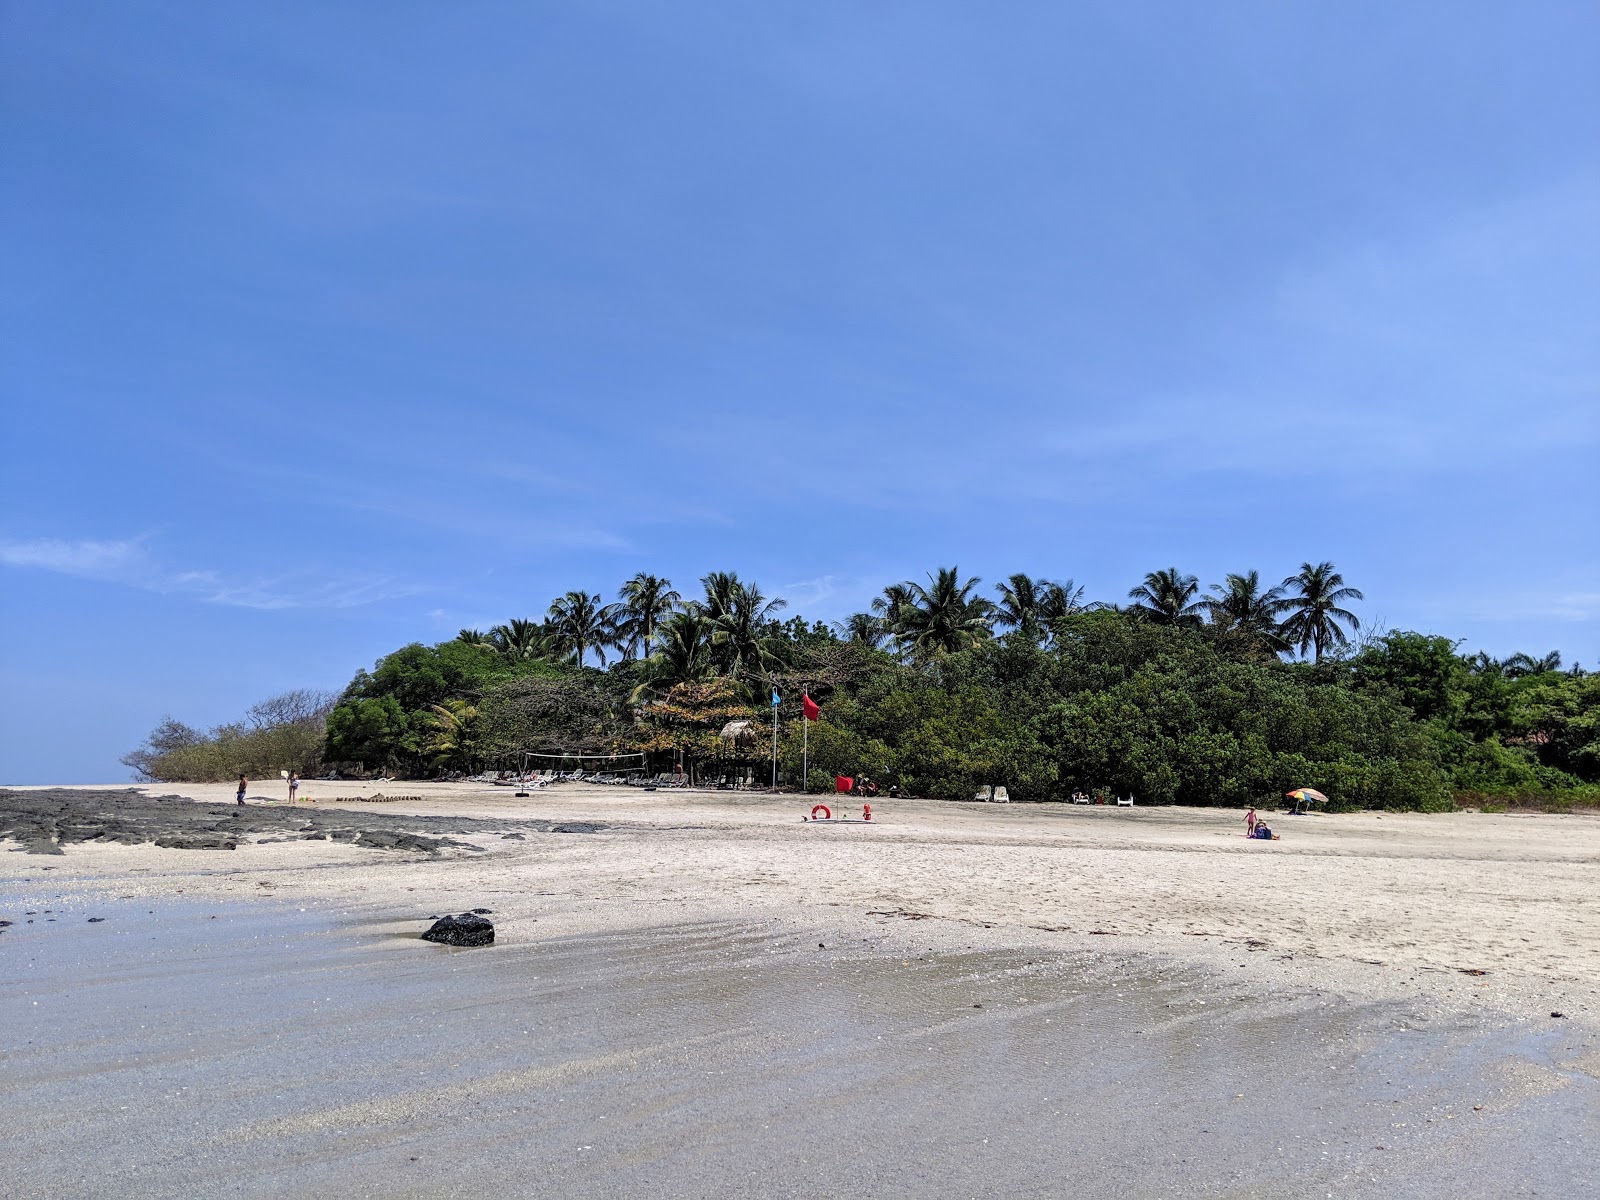 Playa Langosta'in fotoğrafı - rahatlamayı sevenler arasında popüler bir yer